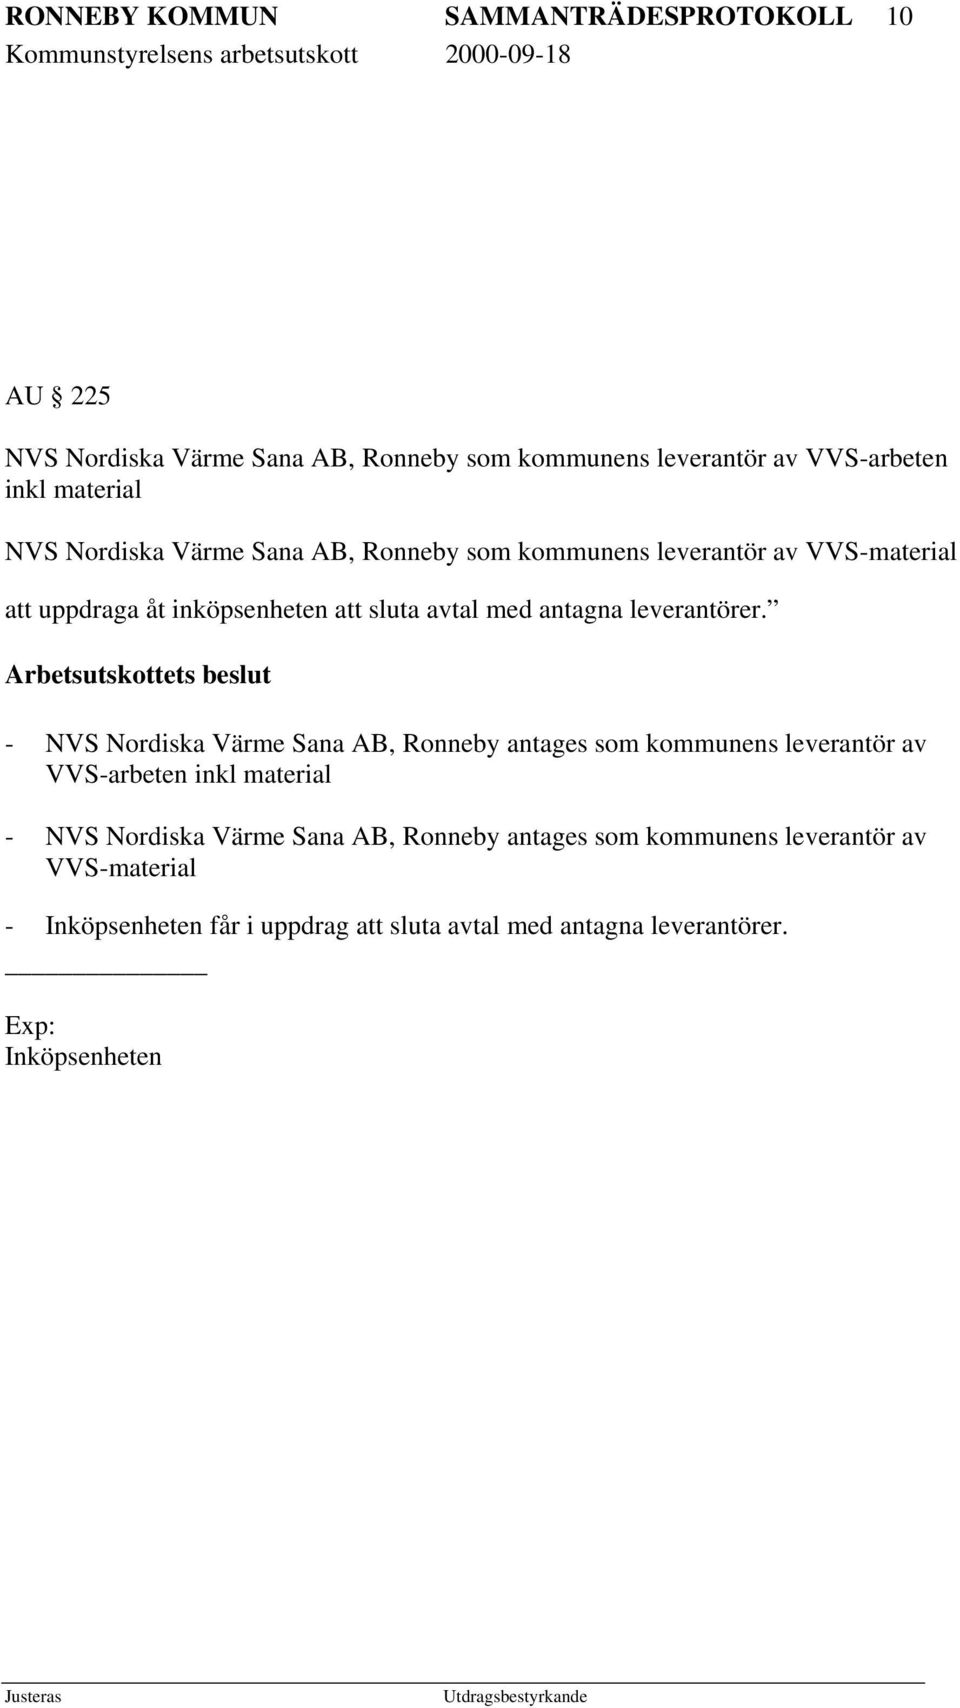 Arbetsutskottets beslut - NVS Nordiska Värme Sana AB, Ronneby antages som kommunens leverantör av VVS-arbeten inkl material - NVS Nordiska Värme